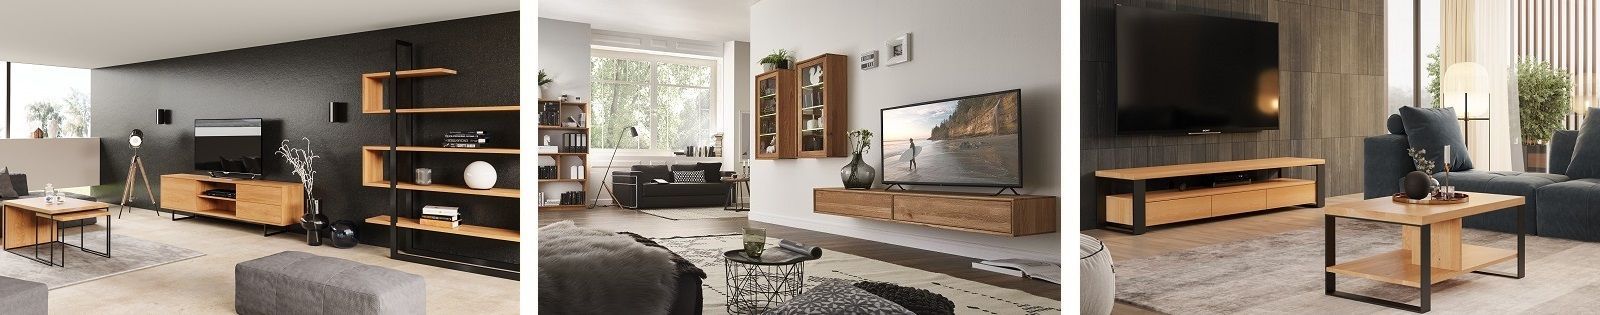 Meuble tv chêne massif - meuble en chêne massif - Lotusea